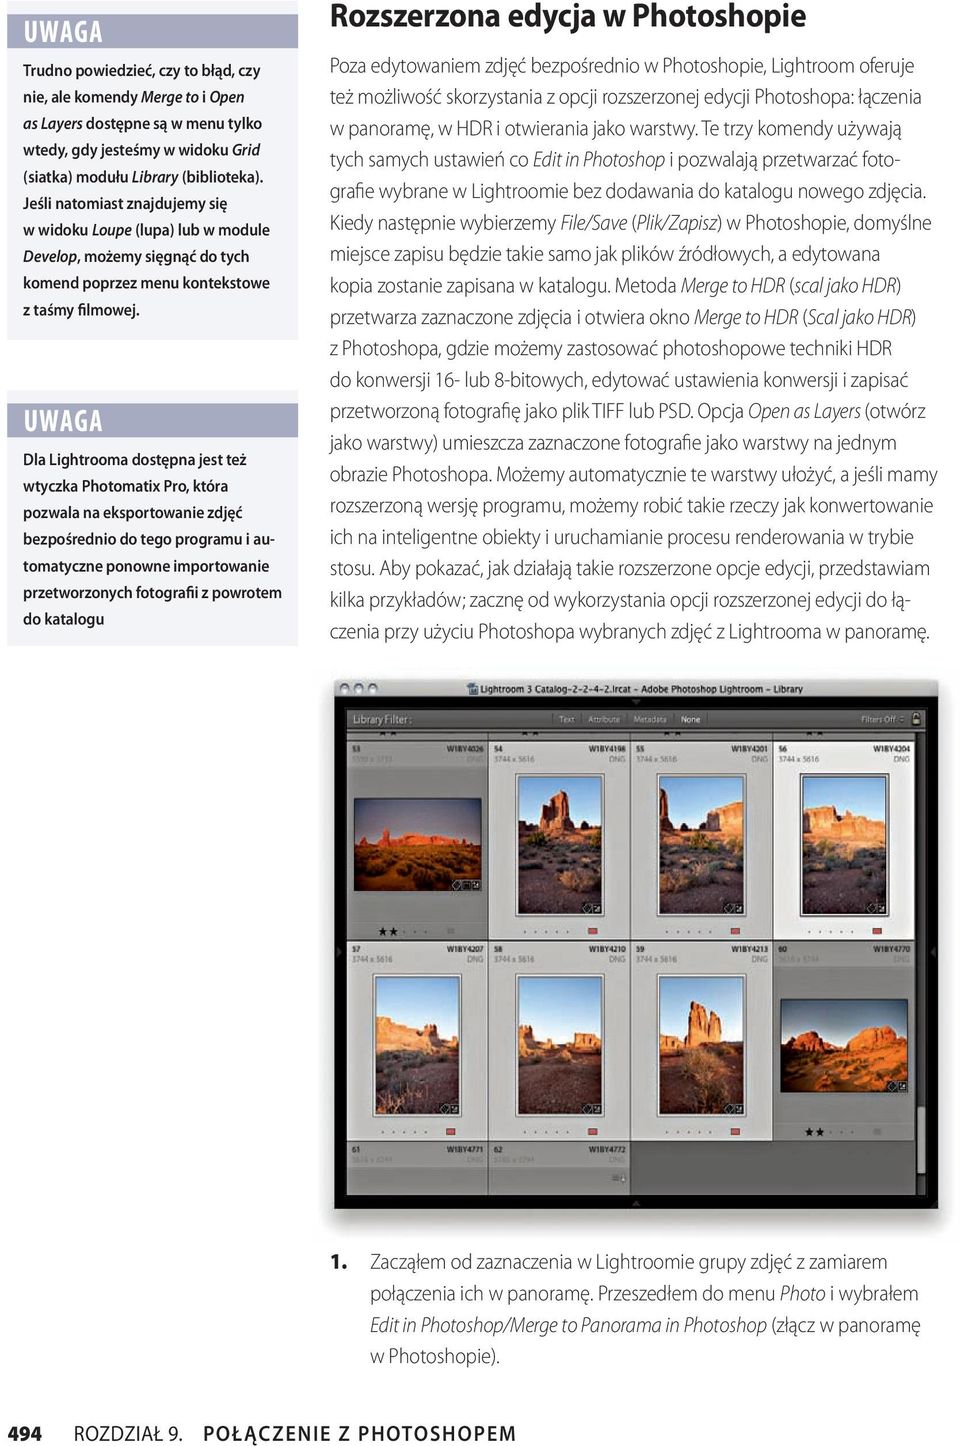 UWAGA Dla Lightrooma dostępna jest też wtyczka Photomatix Pro, która pozwala na eksportowanie zdjęć bezpośrednio do tego programu i automatyczne ponowne importowanie przetworzonych fotografii z